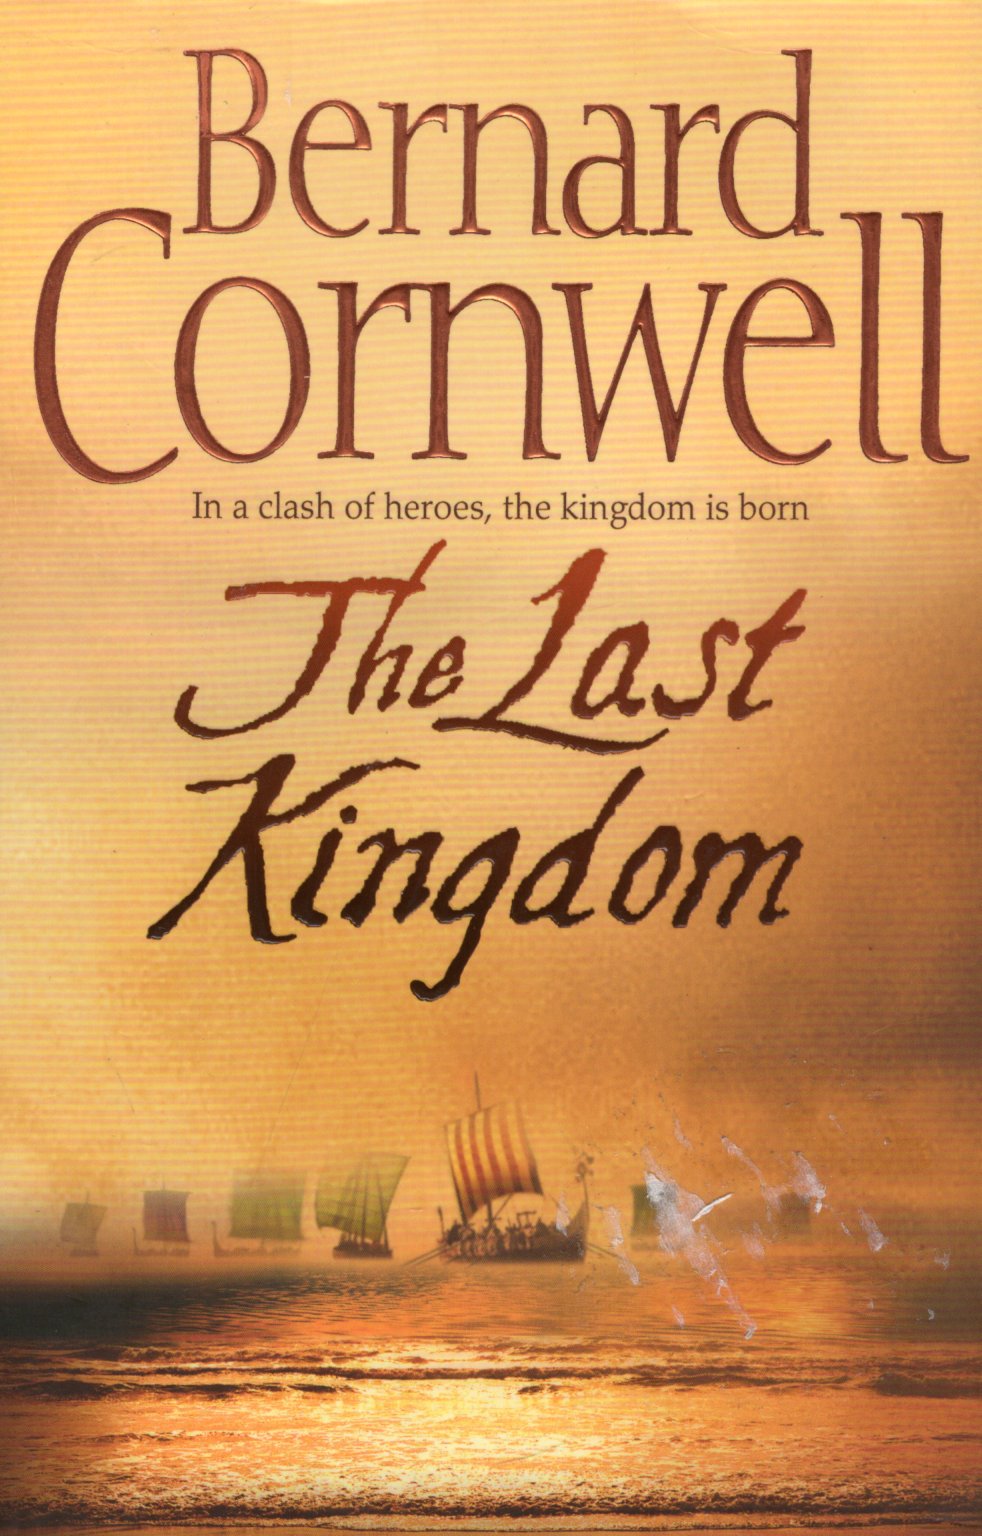 The Last Kingdom by Bernard Cornwell te koop op hetbookcafe.nl